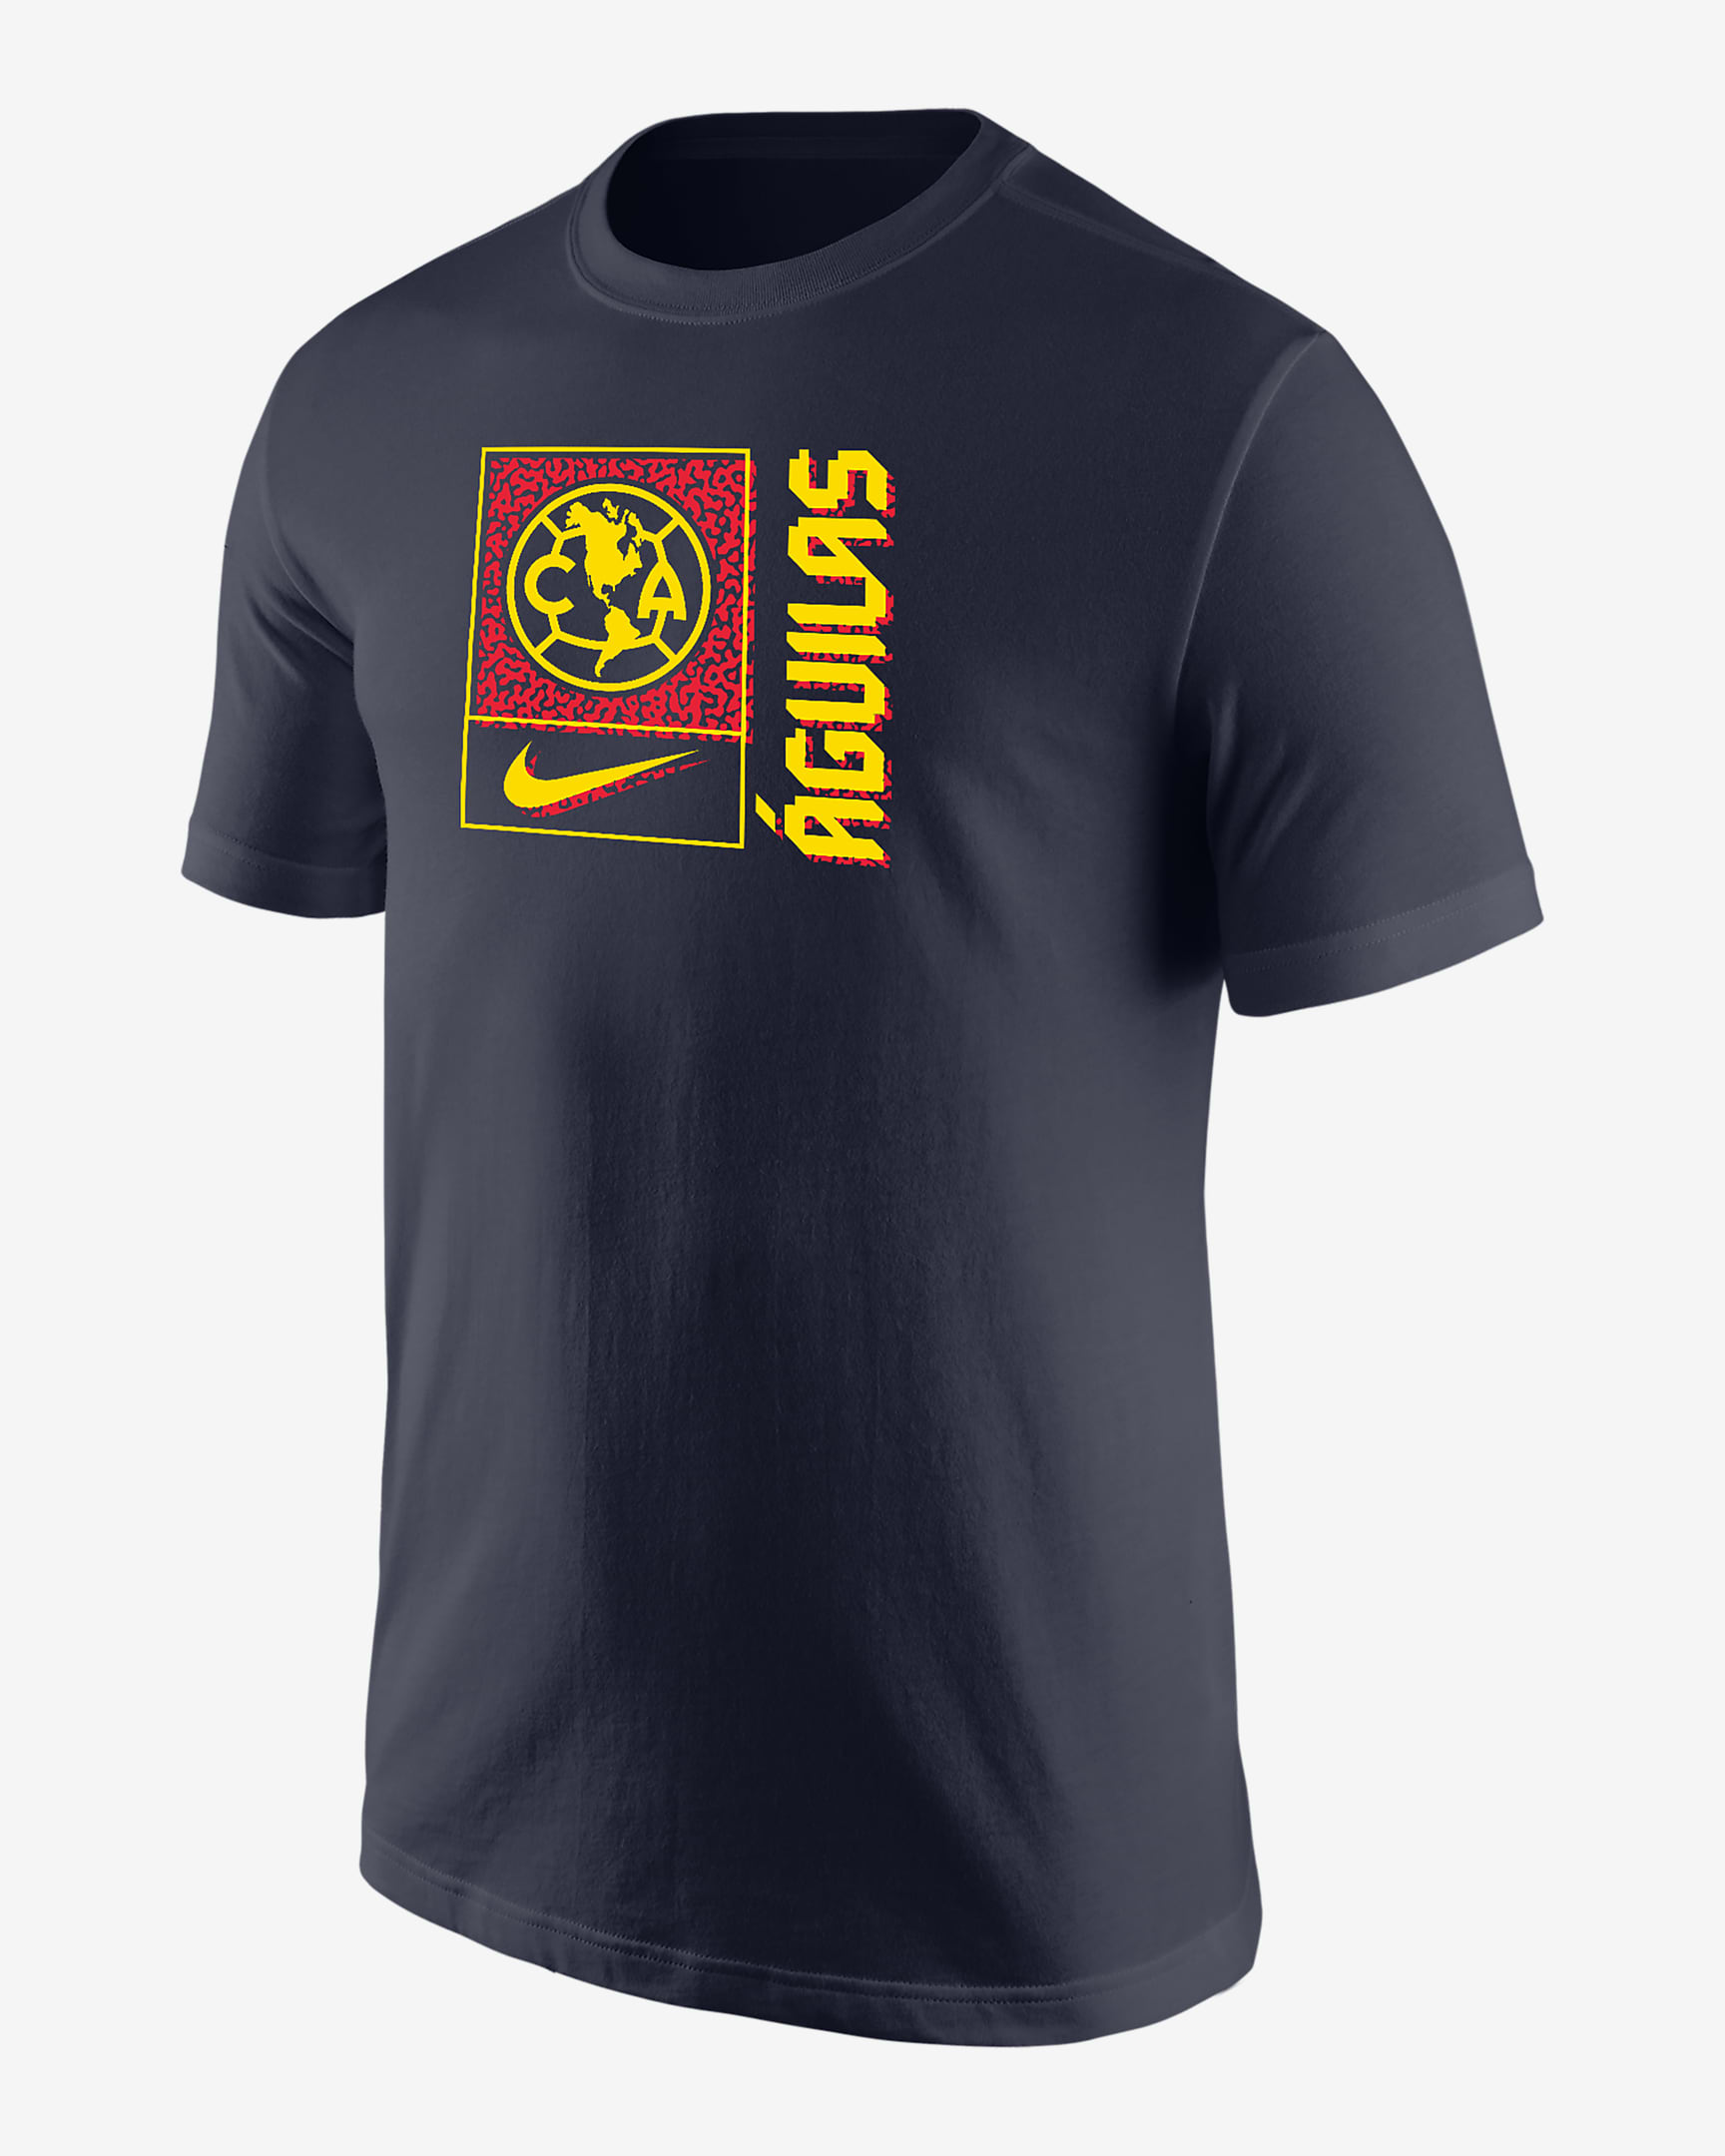 Club América Men's Nike Soccer T-Shirt. Nike.com